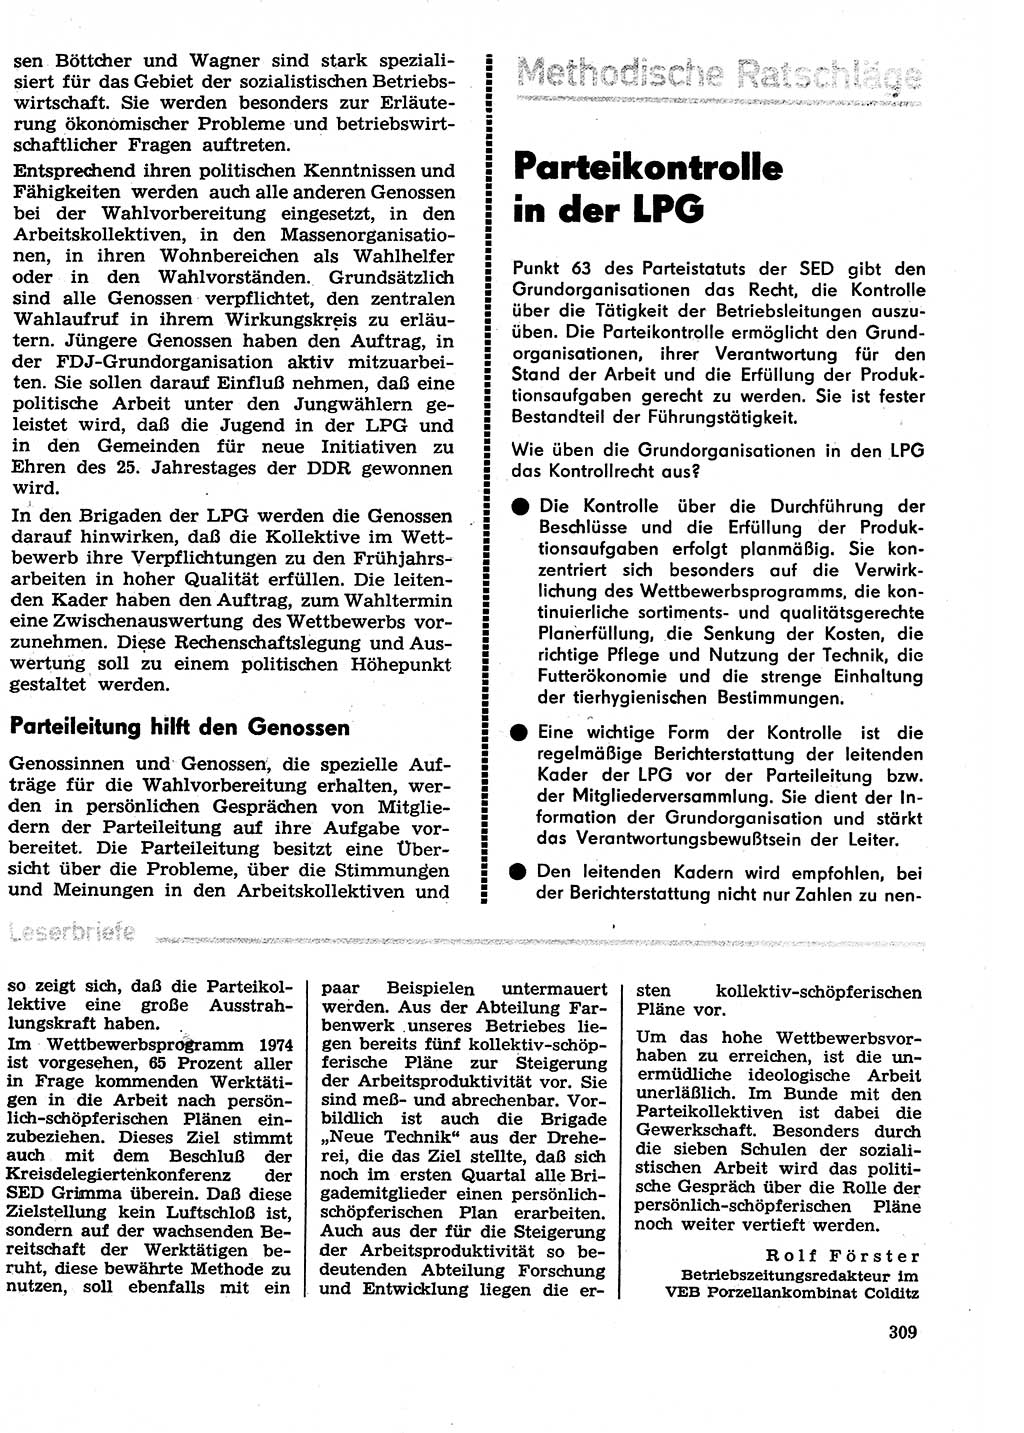 Neuer Weg (NW), Organ des Zentralkomitees (ZK) der SED (Sozialistische Einheitspartei Deutschlands) für Fragen des Parteilebens, 29. Jahrgang [Deutsche Demokratische Republik (DDR)] 1974, Seite 309 (NW ZK SED DDR 1974, S. 309)